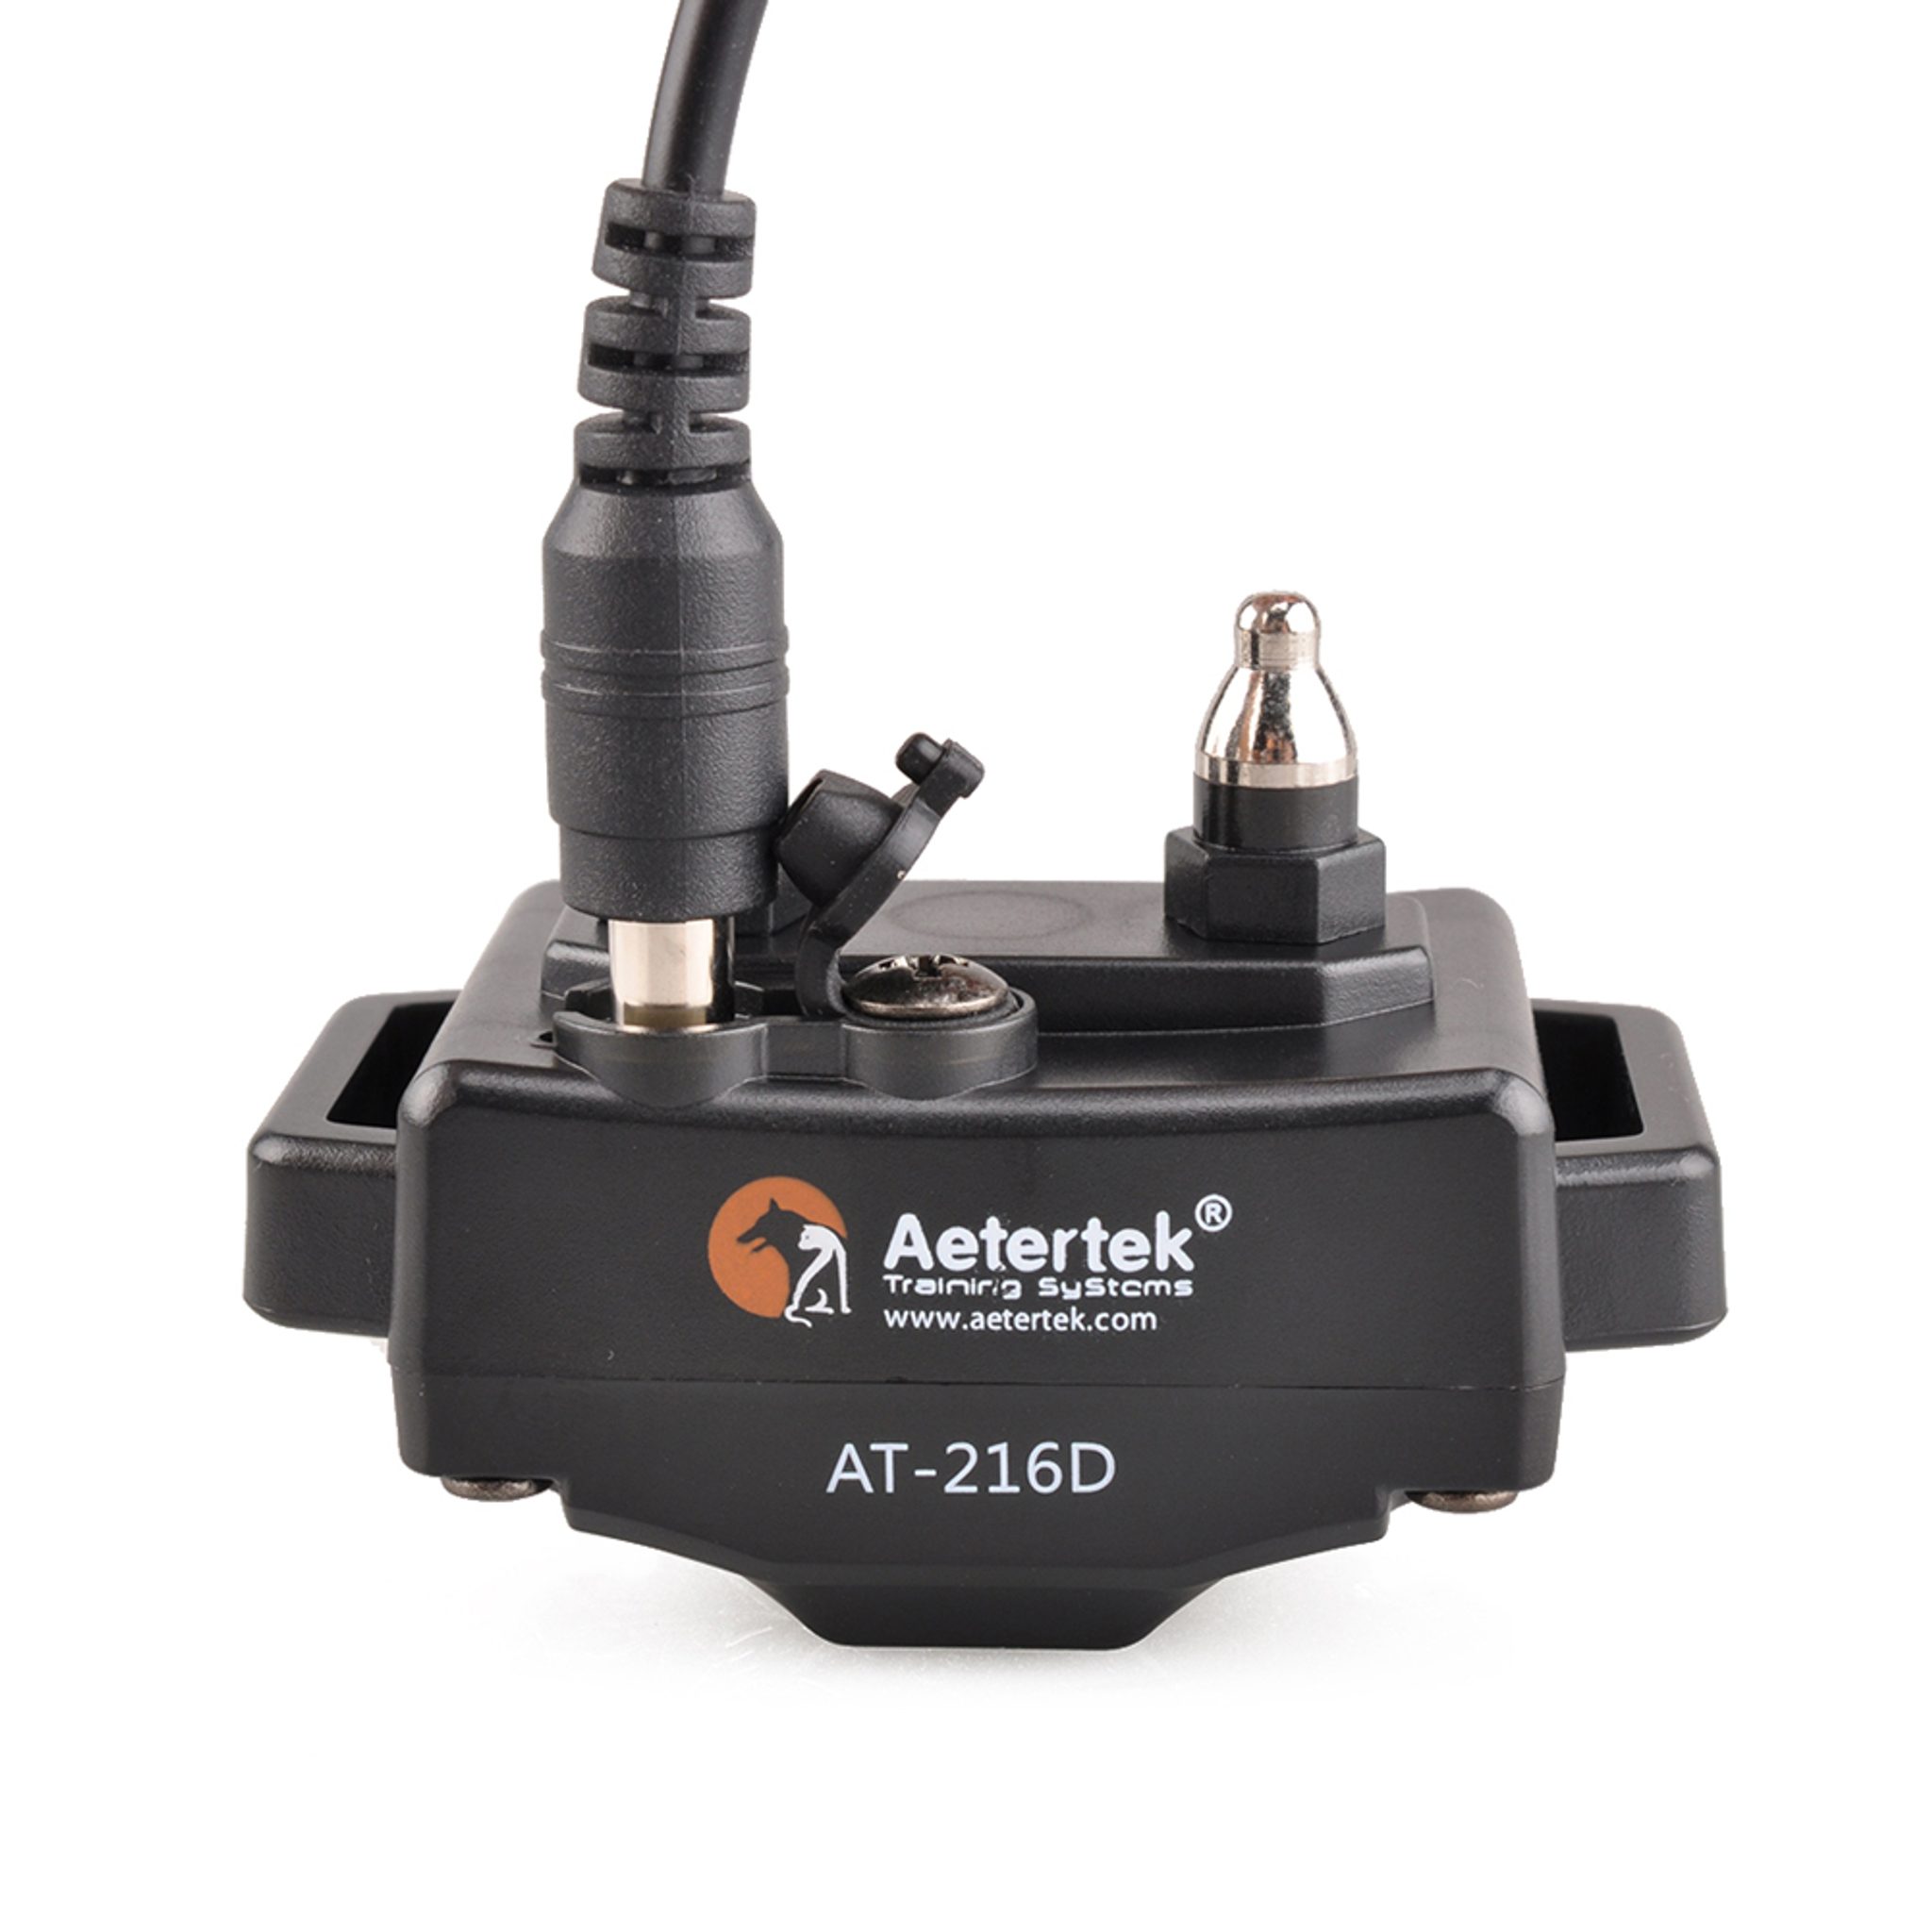 Aetertek AT-216D - Pro 1 psa